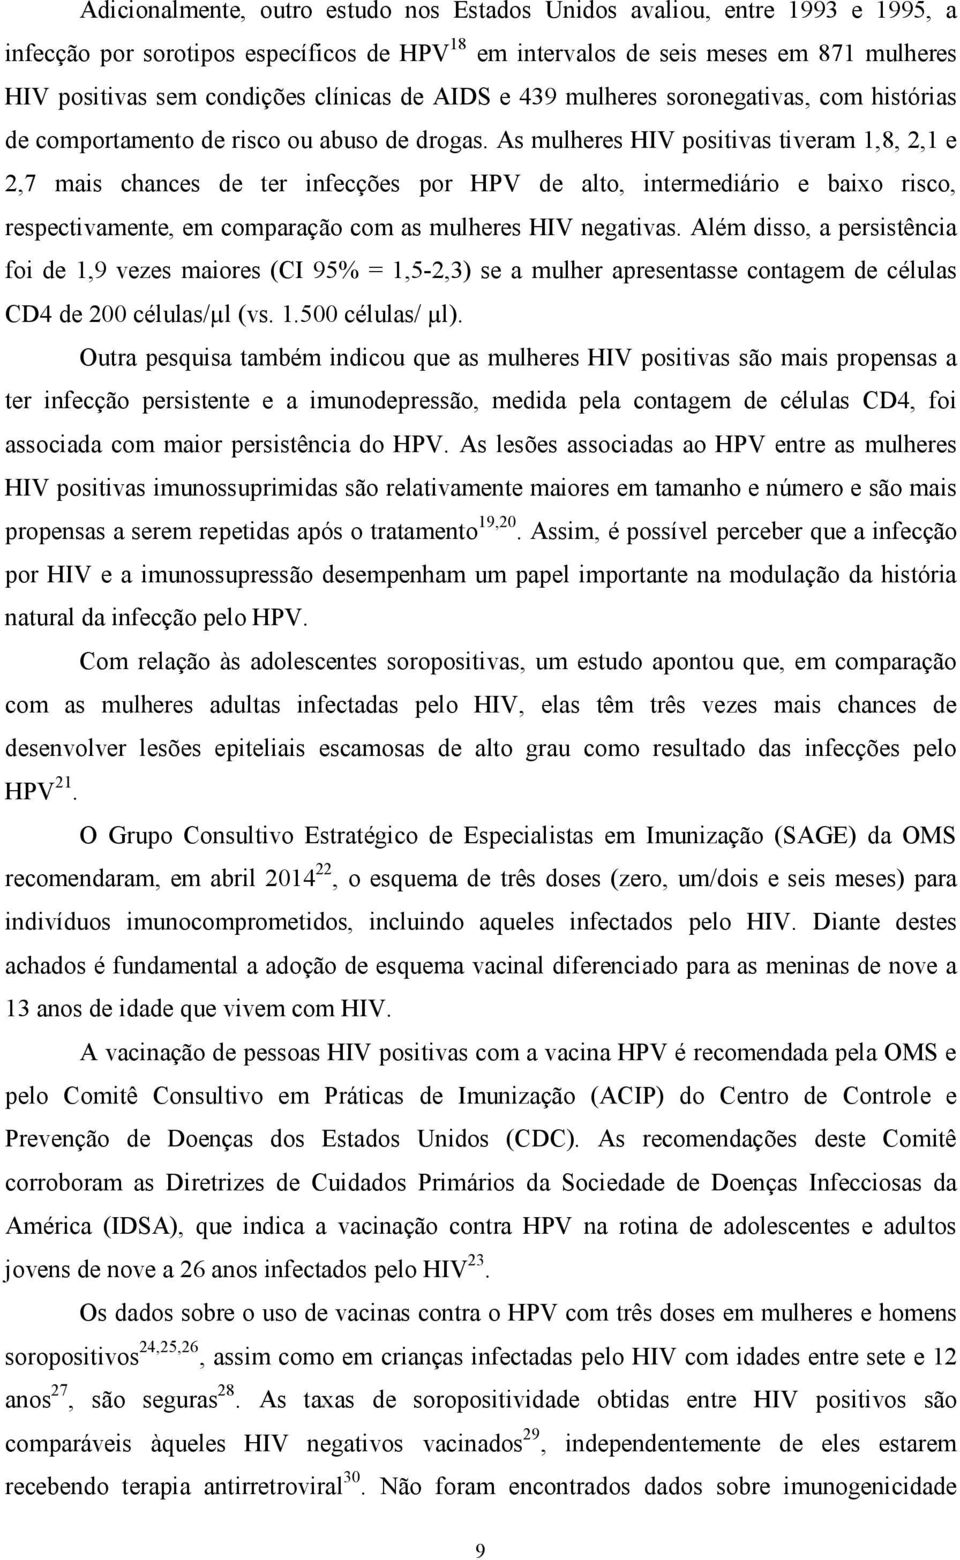 As mulheres HIV positivas tiveram 1,8, 2,1 e 2,7 mais chances de ter infecções por HPV de alto, intermediário e baixo risco, respectivamente, em comparação com as mulheres HIV negativas.